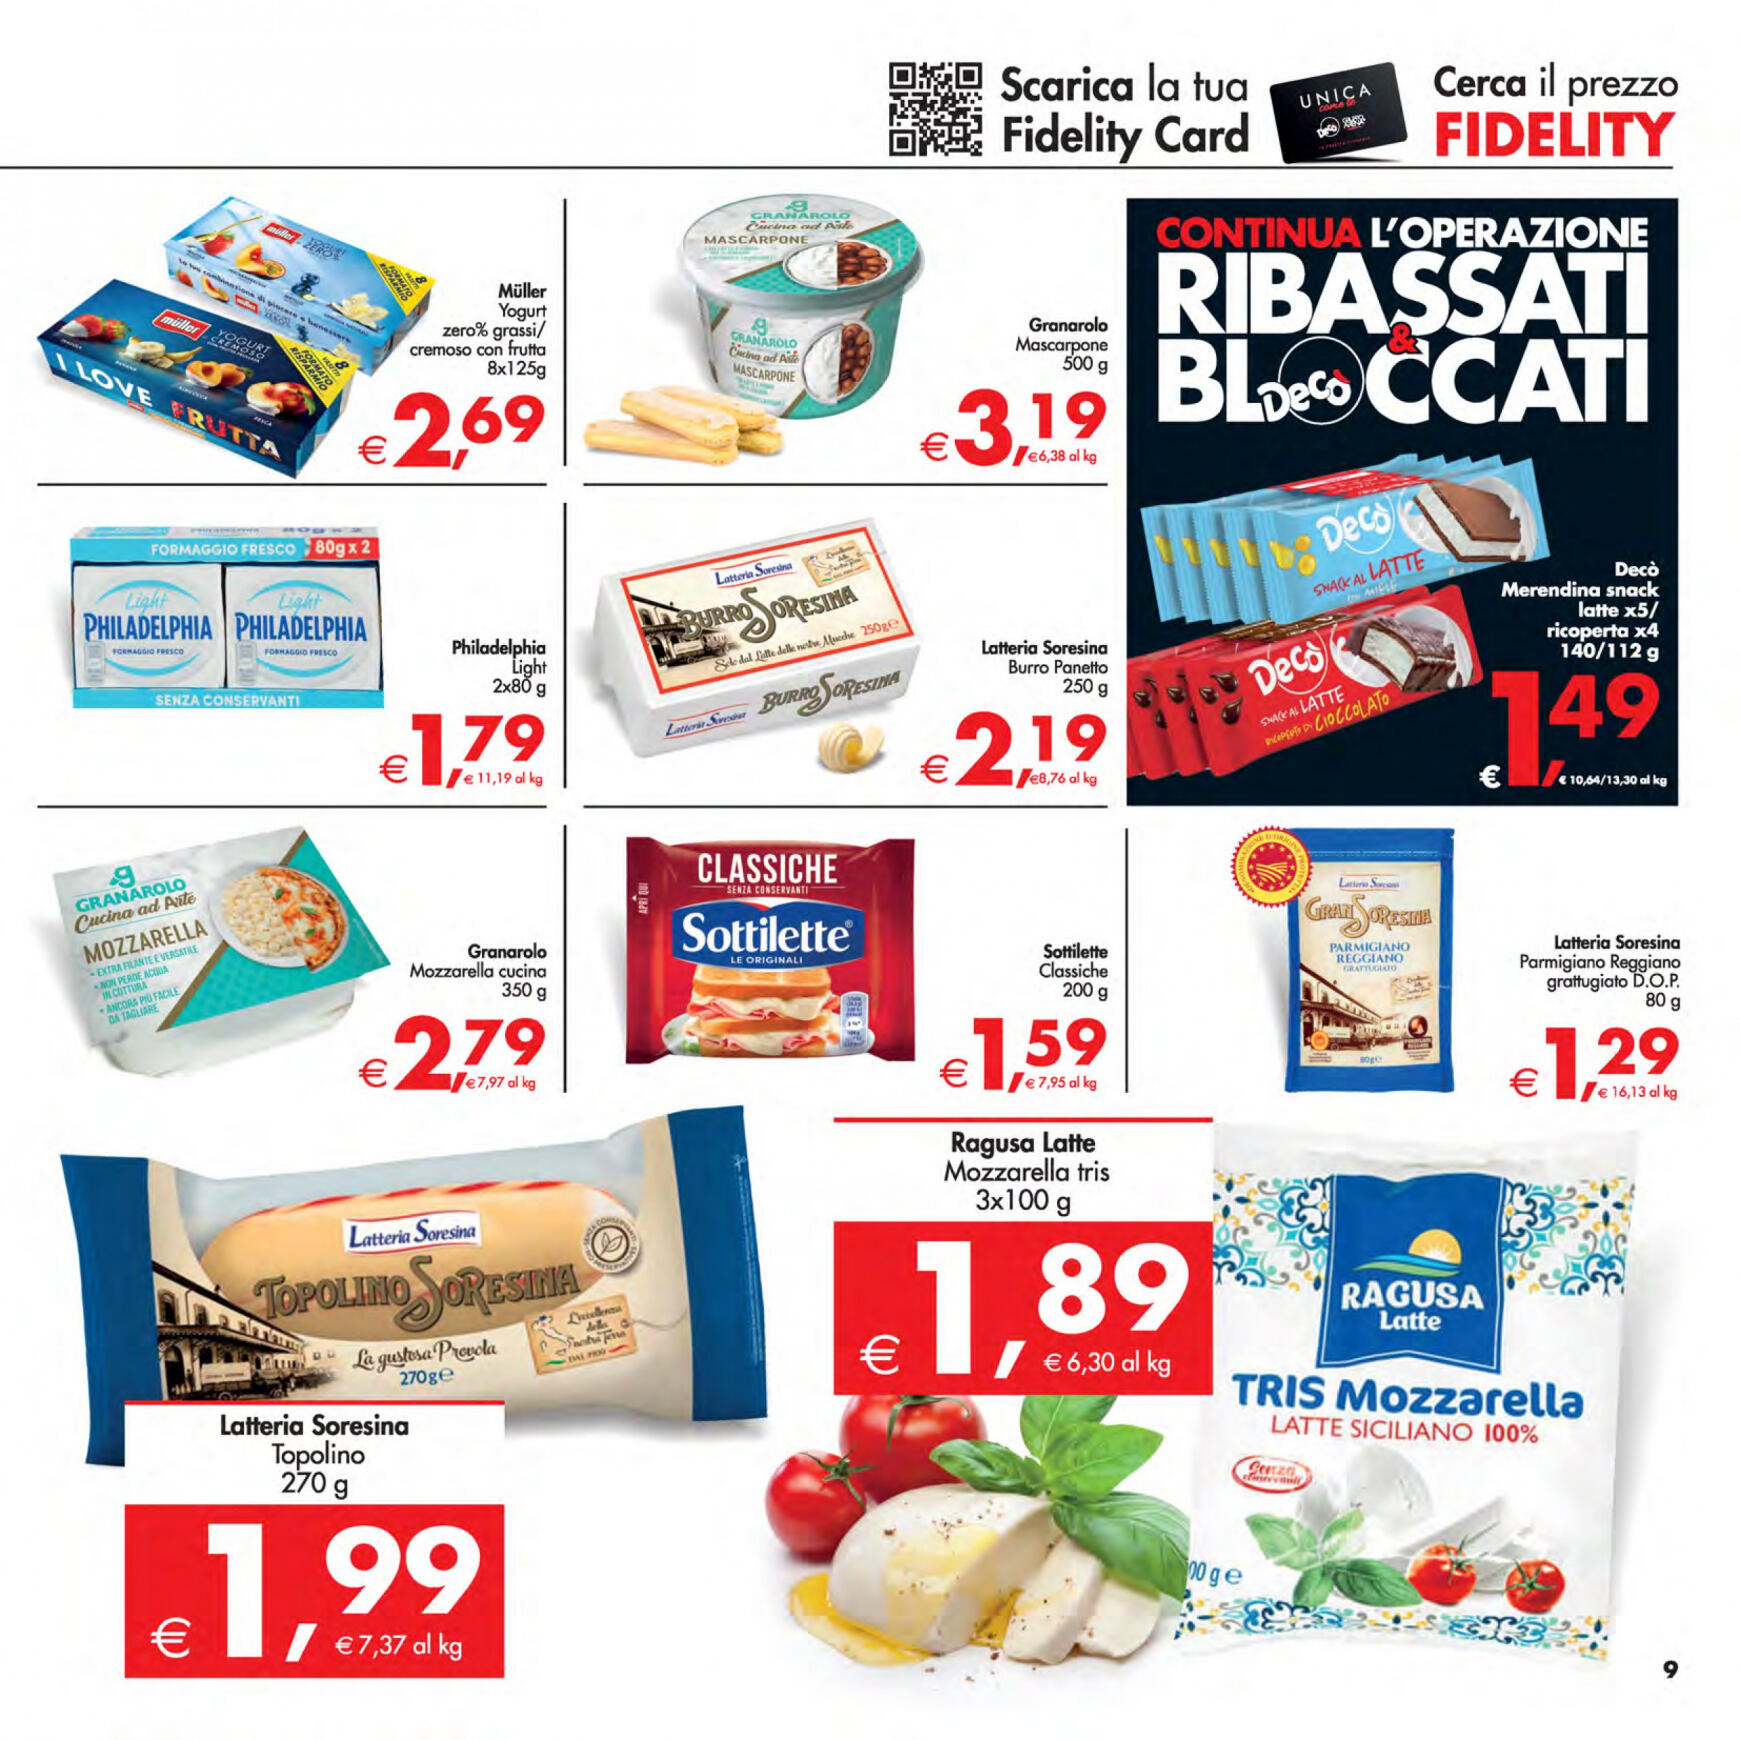 deco - Nuovo volantino Decò - Supermercati/Maxistore/Local 23.04. - 02.05. - page: 9